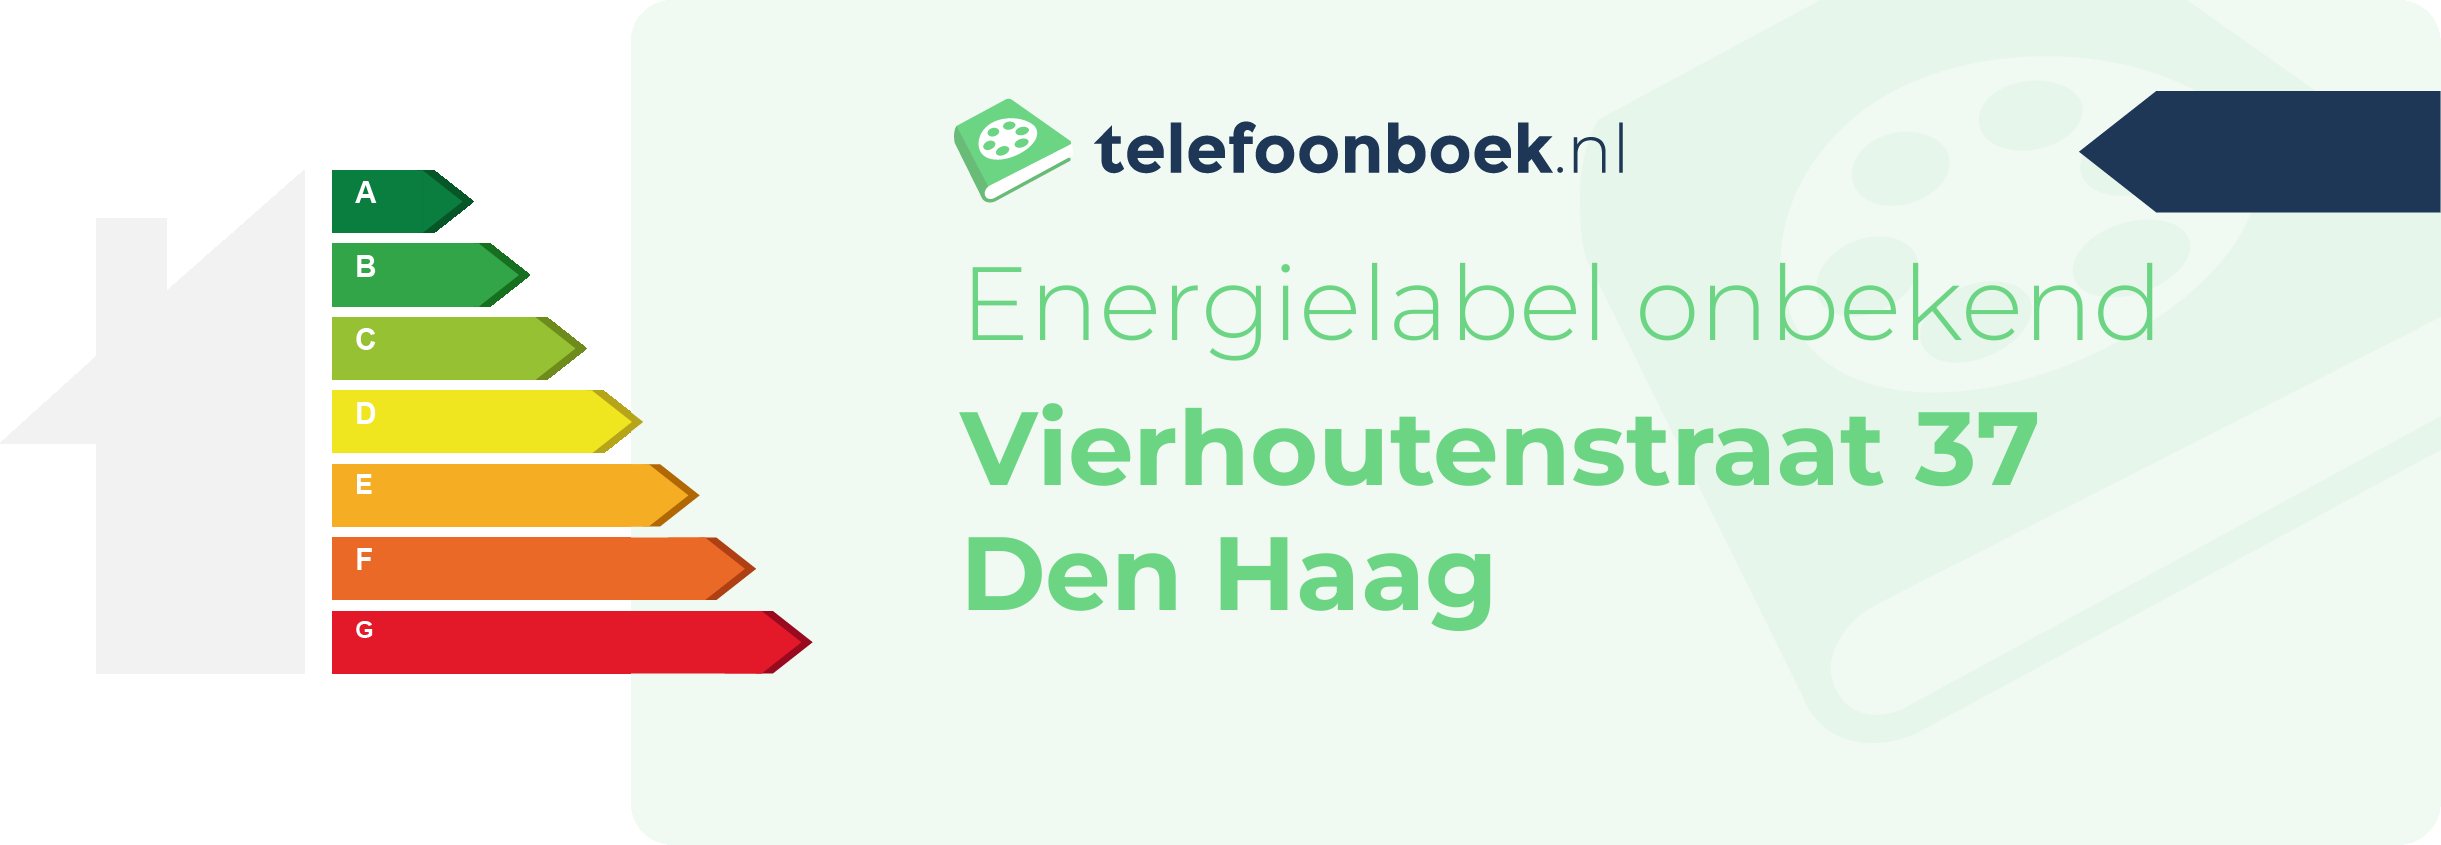 Energielabel Vierhoutenstraat 37 Den Haag